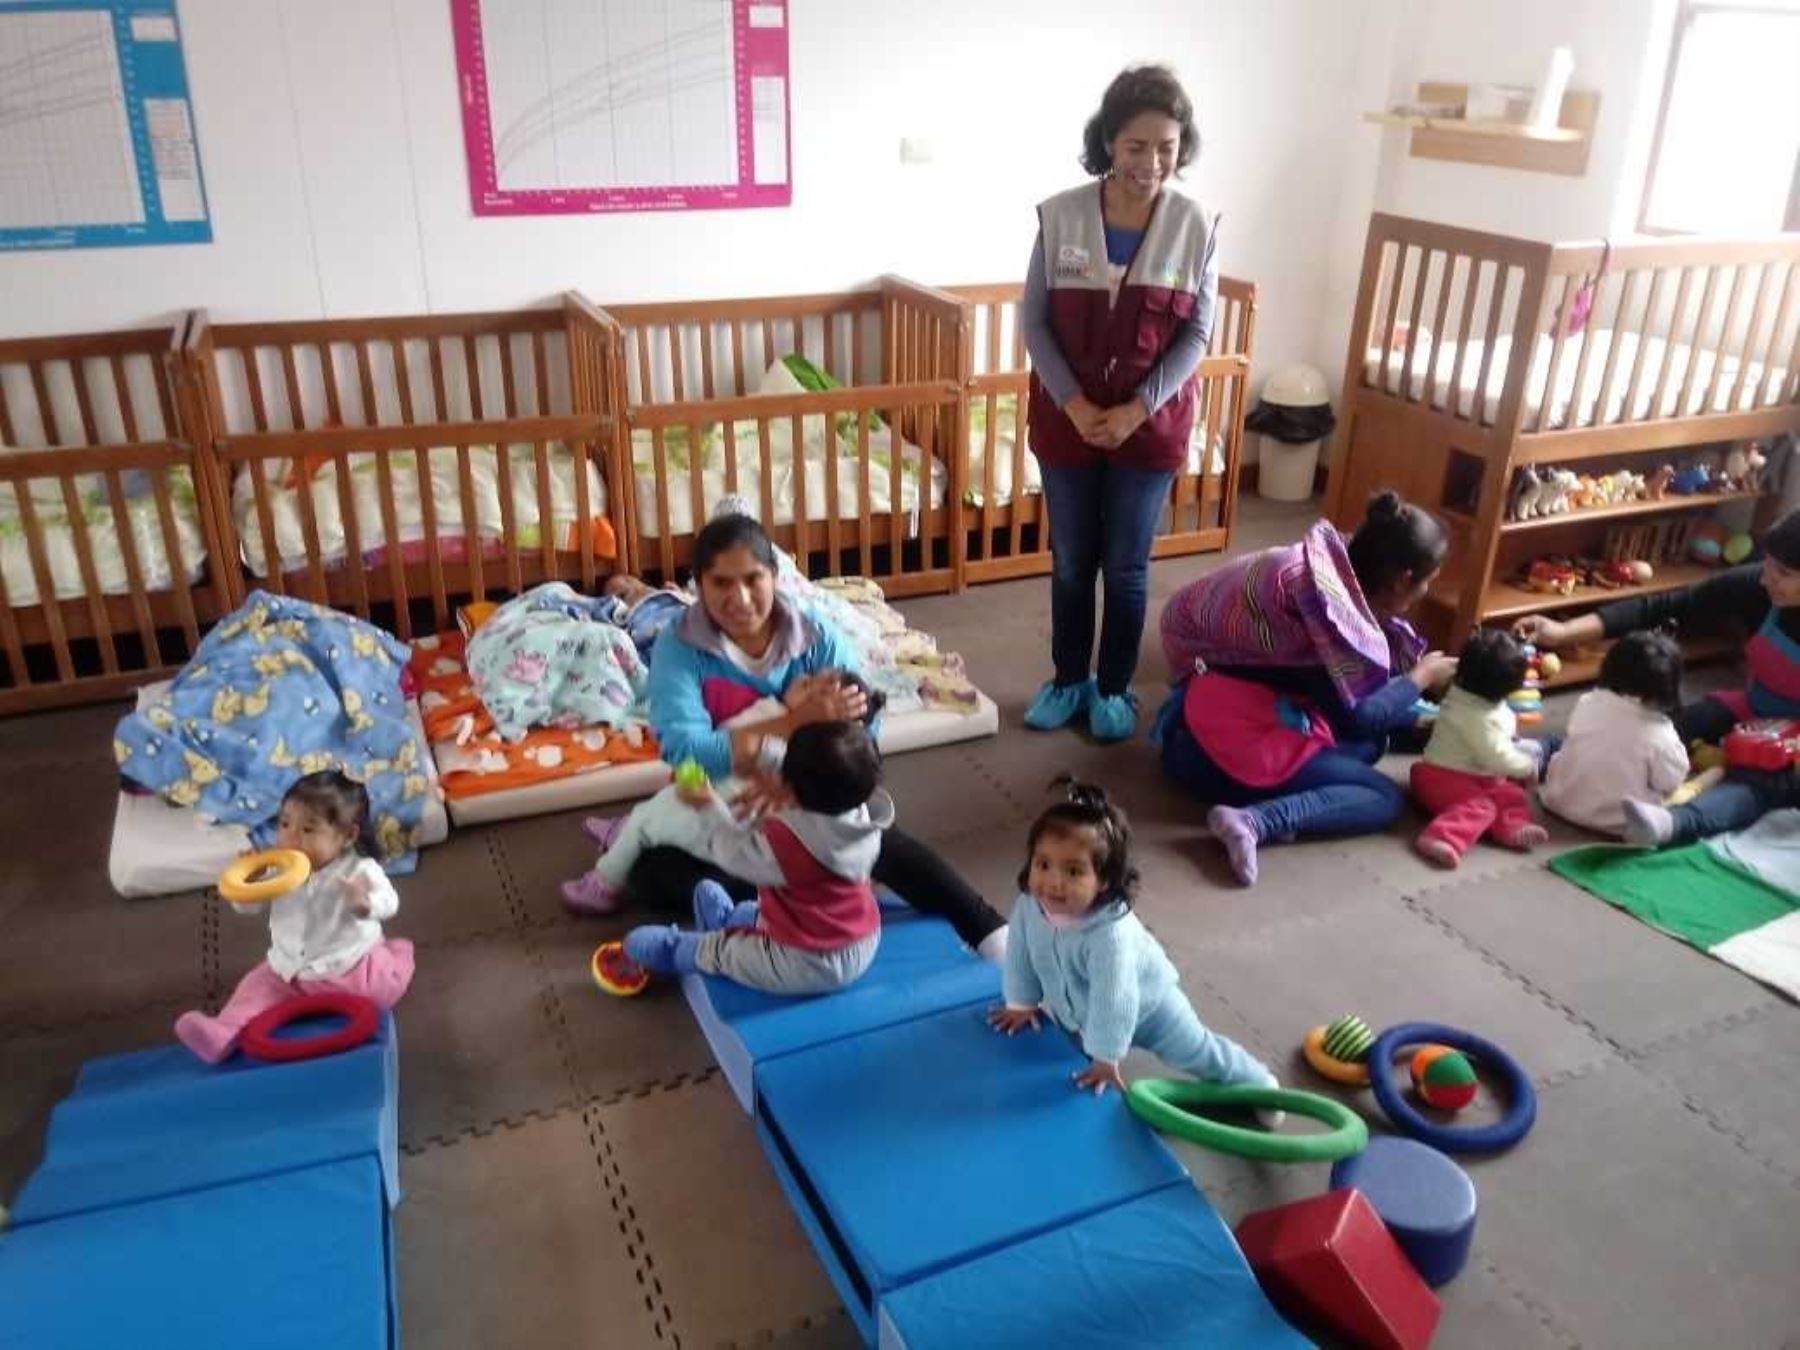 Patricia Balbuena, directora ejecutiva del programa Cuna Más, inauguró hoy en la región Cajamarca dos nuevos locales del Servicio de Cuidado Diurno, con el fin de brindar atención integral y nutrición para combatir la anemia y desnutrición crónica infantil.